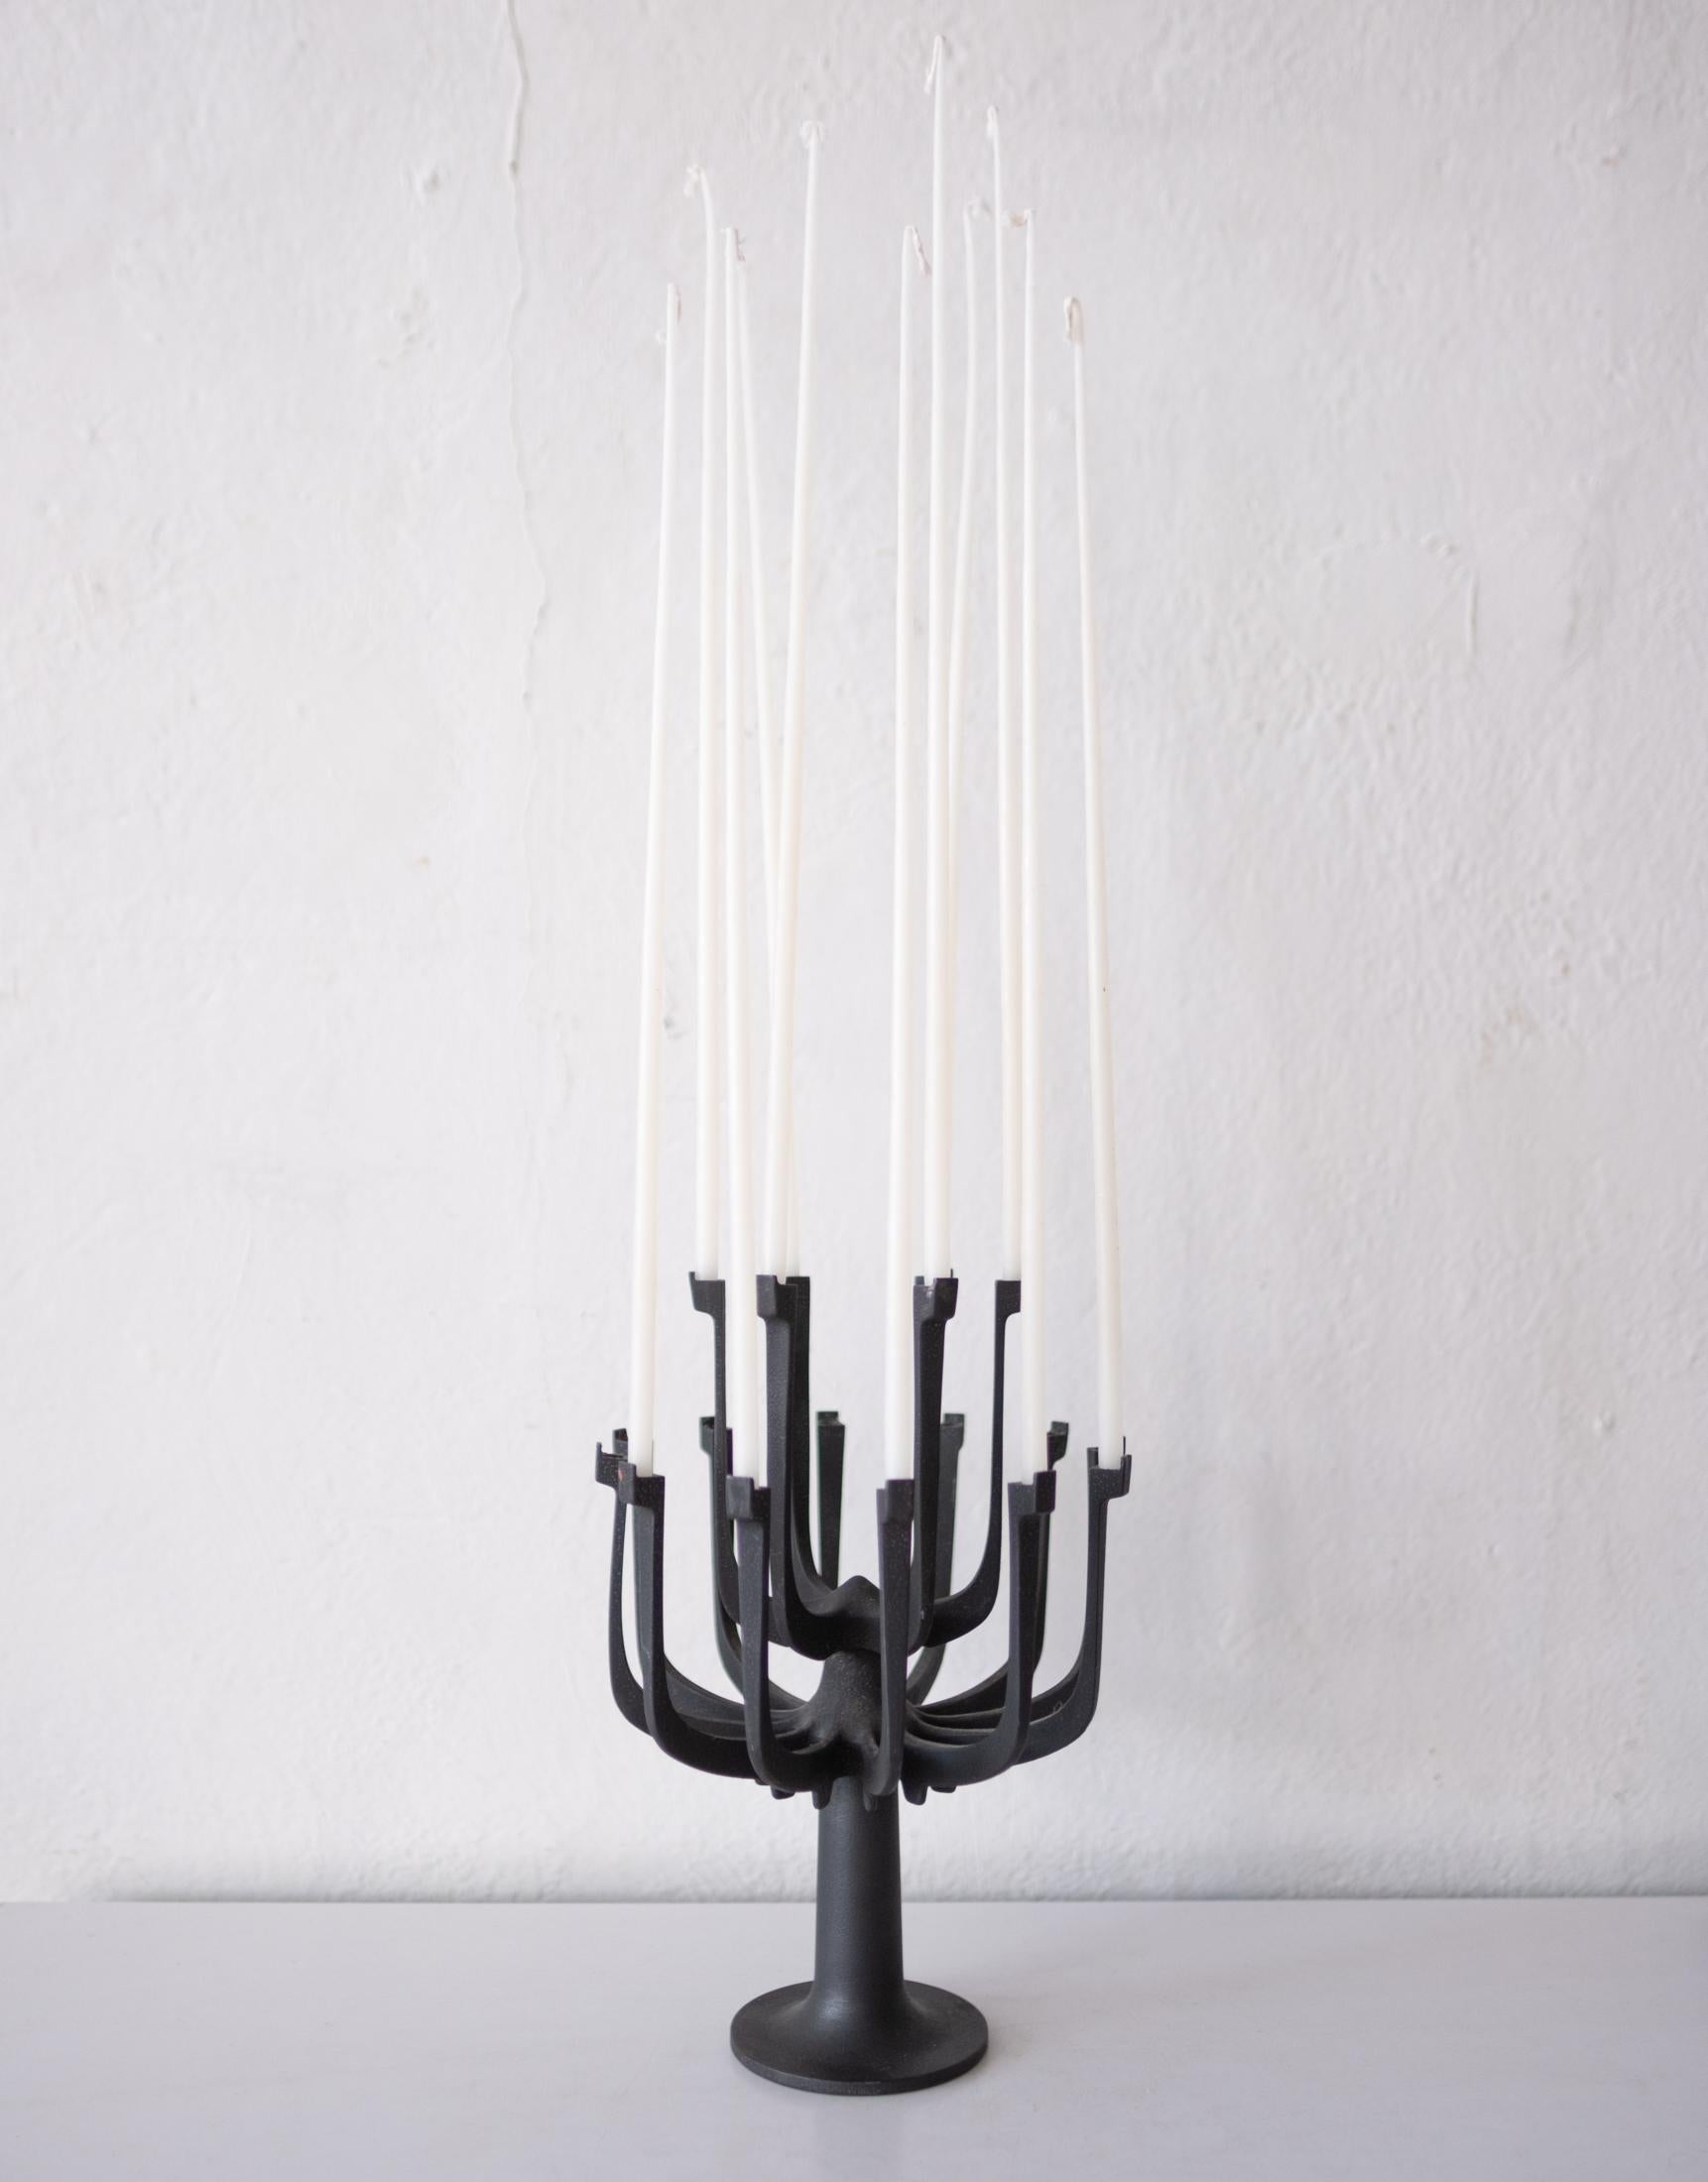 Von Gunnar Cyren entworfener Kerzenhalter aus Eisen von Dansk. Teil der Lysestager-Linie. Dies ist eine seltene Form. Enthält eine Schachtel mit spitz zulaufenden Dansk-Kerzen.